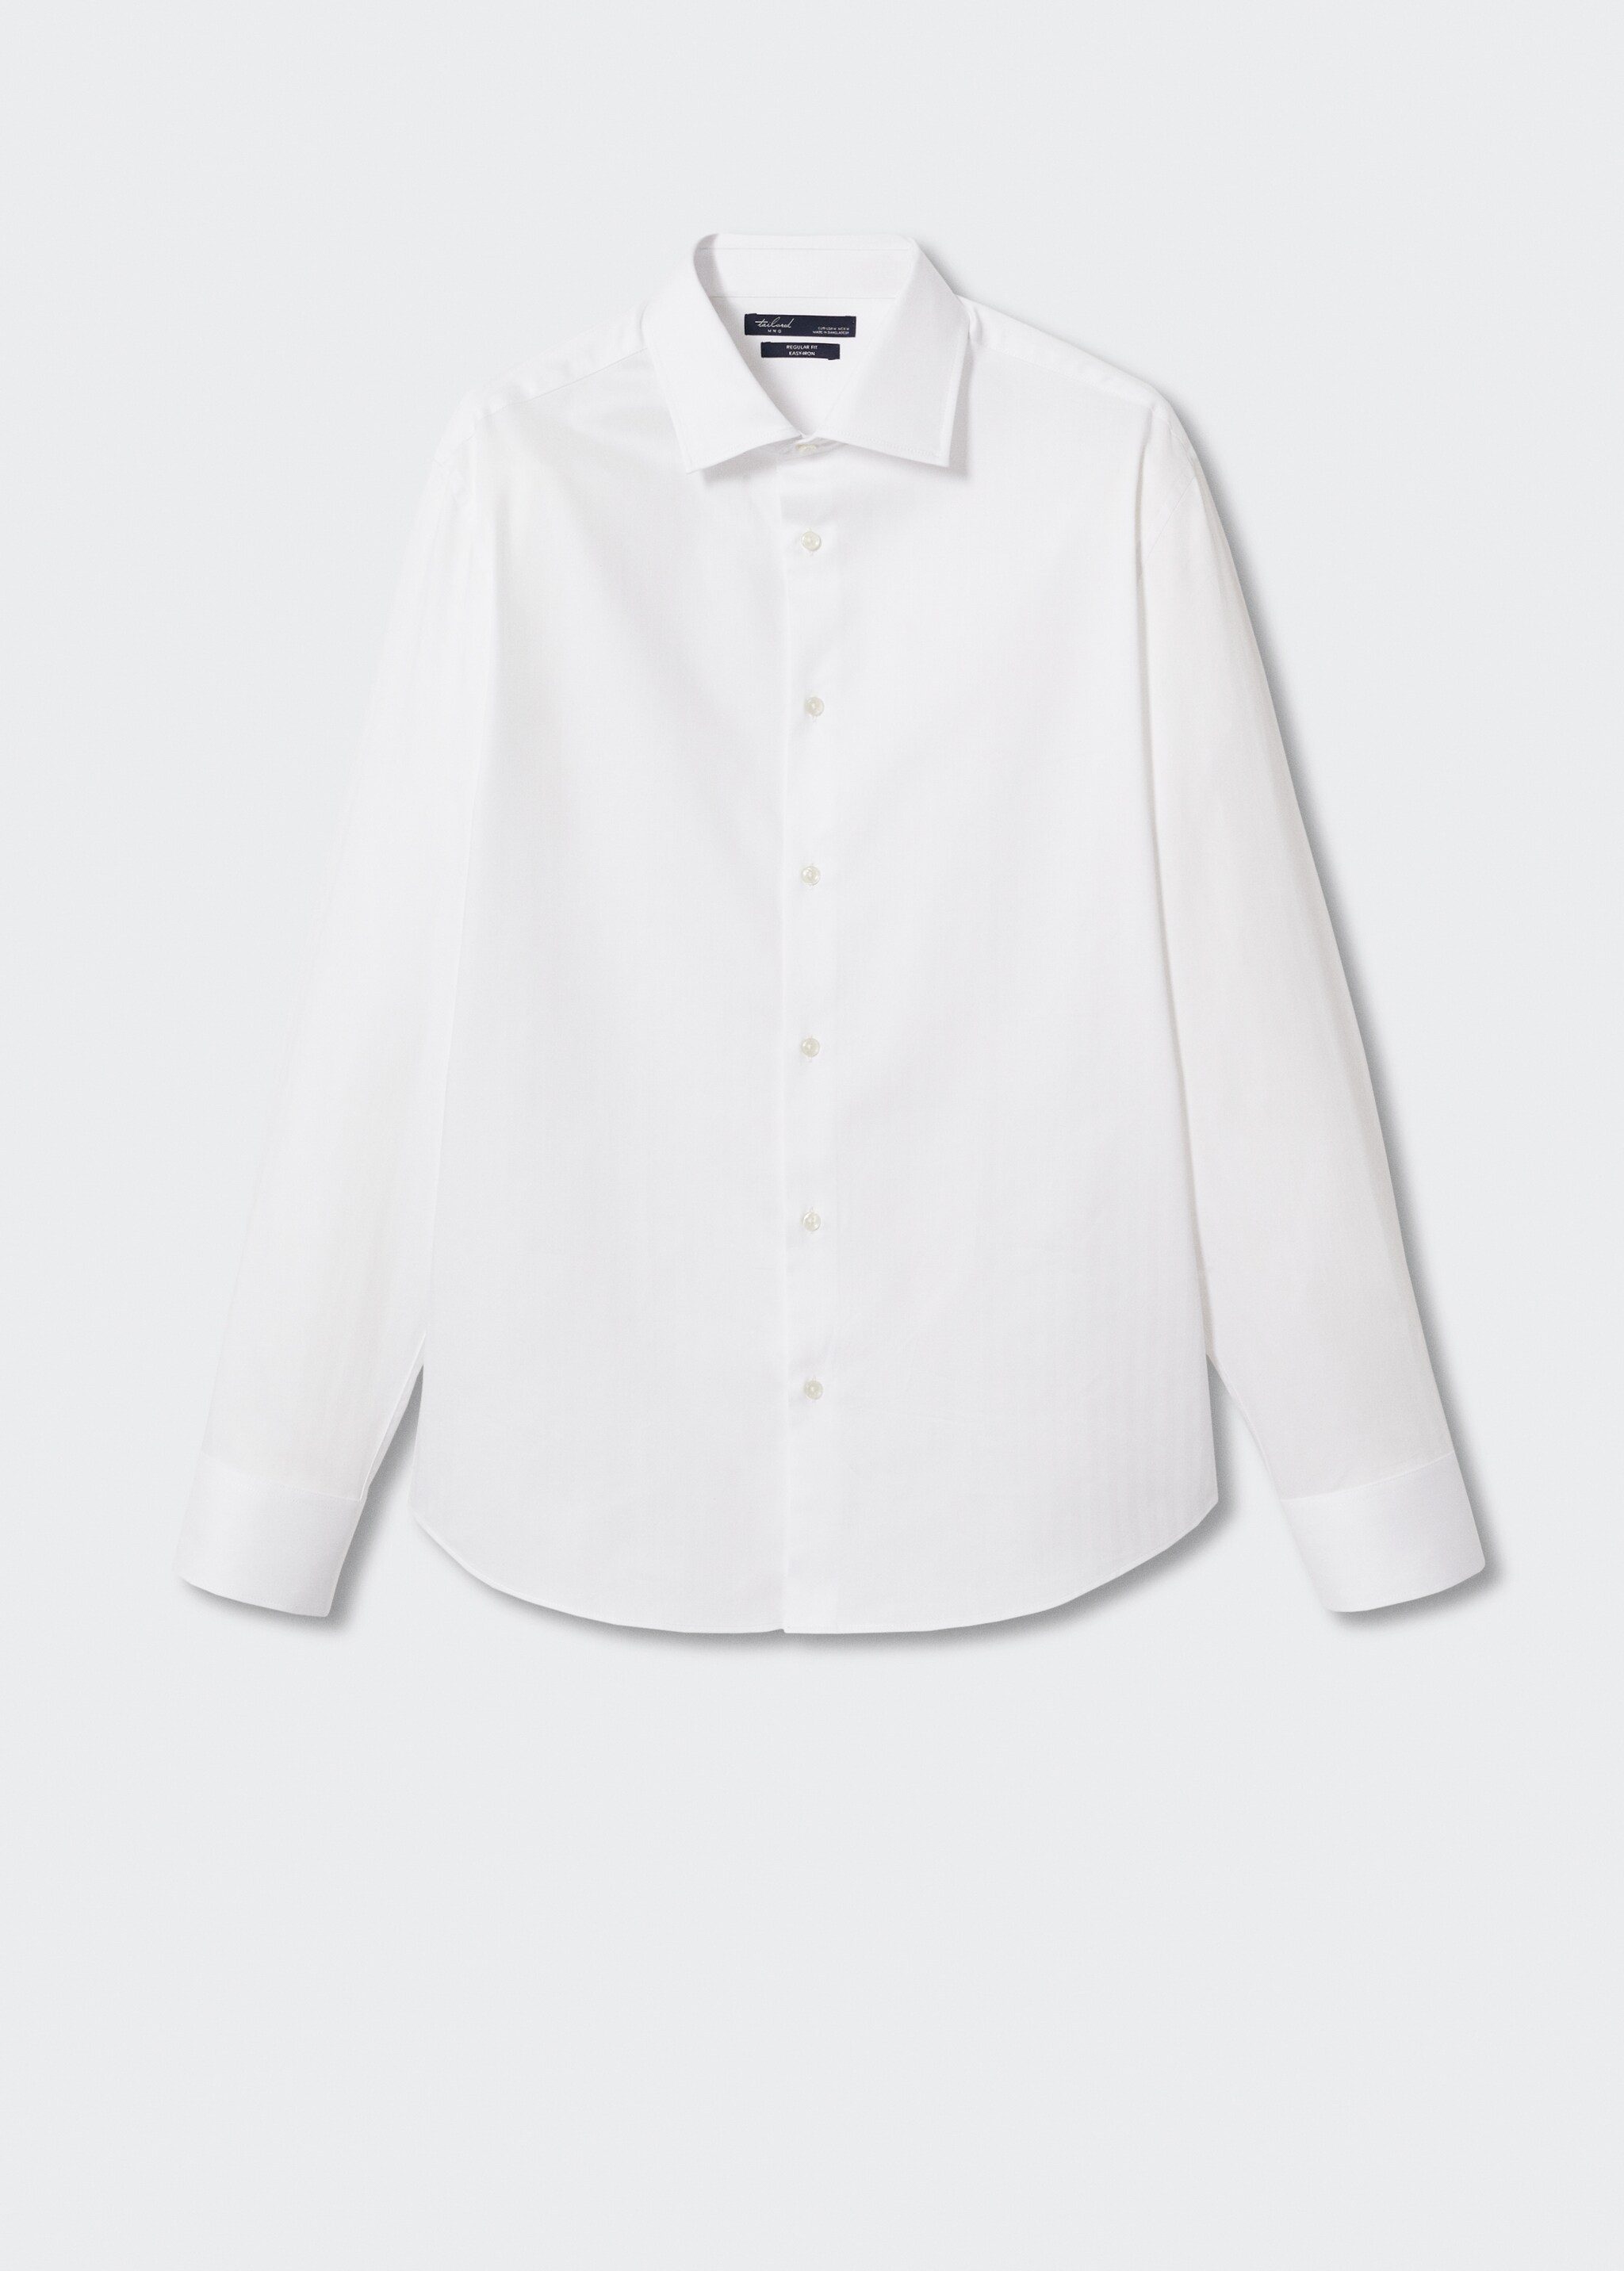 Camisa traje slim fit algodón - Artículo sin modelo